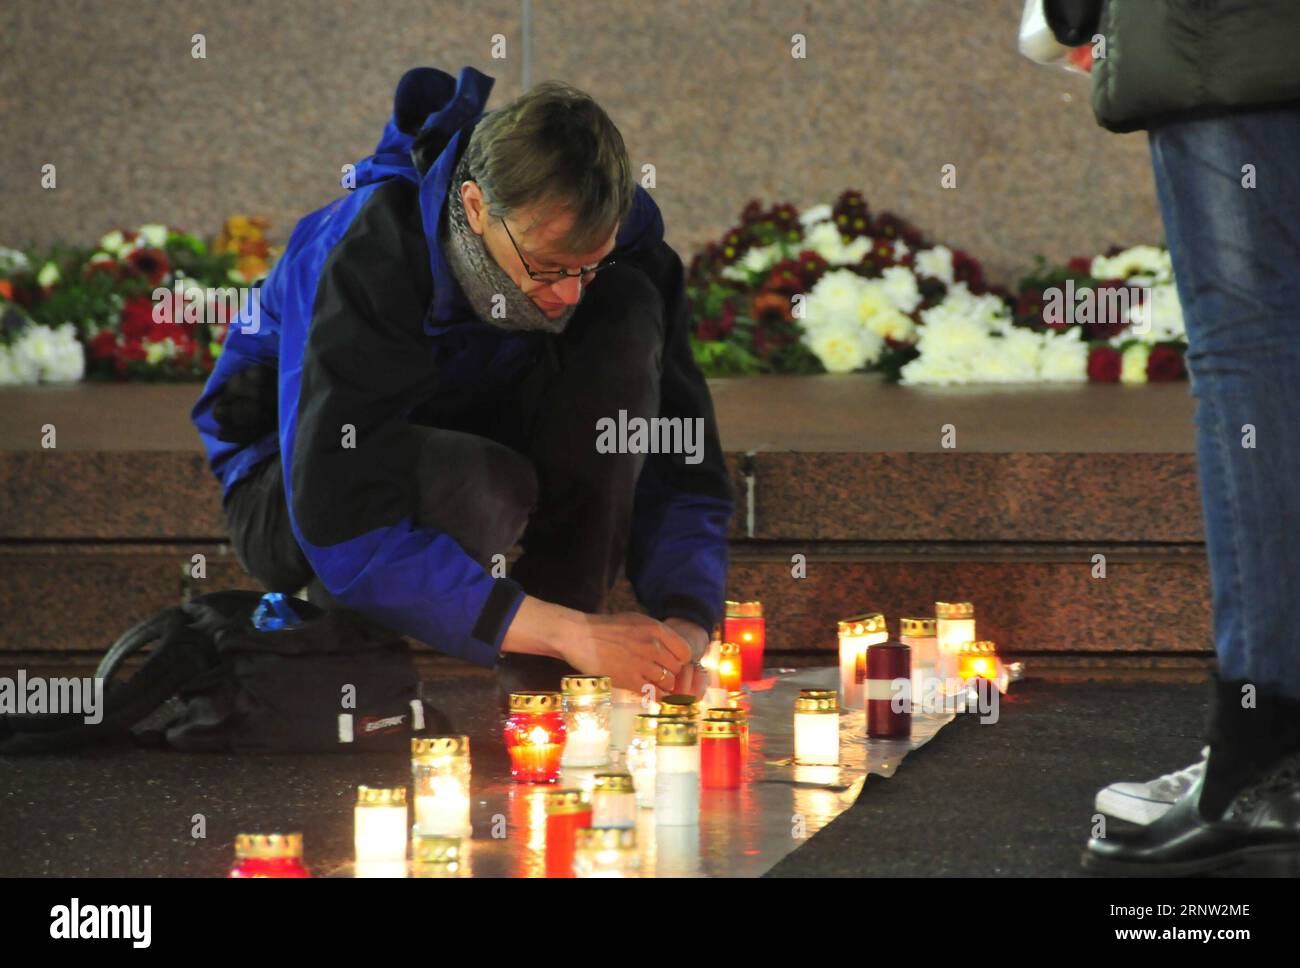 (171130) -- RIGA, 30 novembre 2017 -- Un homme allume une bougie devant le monument de la liberté lors d'un événement commémoratif à Riga, capitale de la Lettonie, le 30 novembre 2017. Un certain nombre d'événements ont eu lieu jeudi pour commémorer la pire tragédie de l'Holocauste en Lettonie - le meurtre de 25 000 Juifs en seulement deux jours au cours de l'hiver 1941 dans une forêt à l'extérieur de Riga. ) LETTONIE-RIGA-HOLOCAUSTE-COMMÉMORATION Janis PUBLICATIONxNOTxINxCHN Banque D'Images